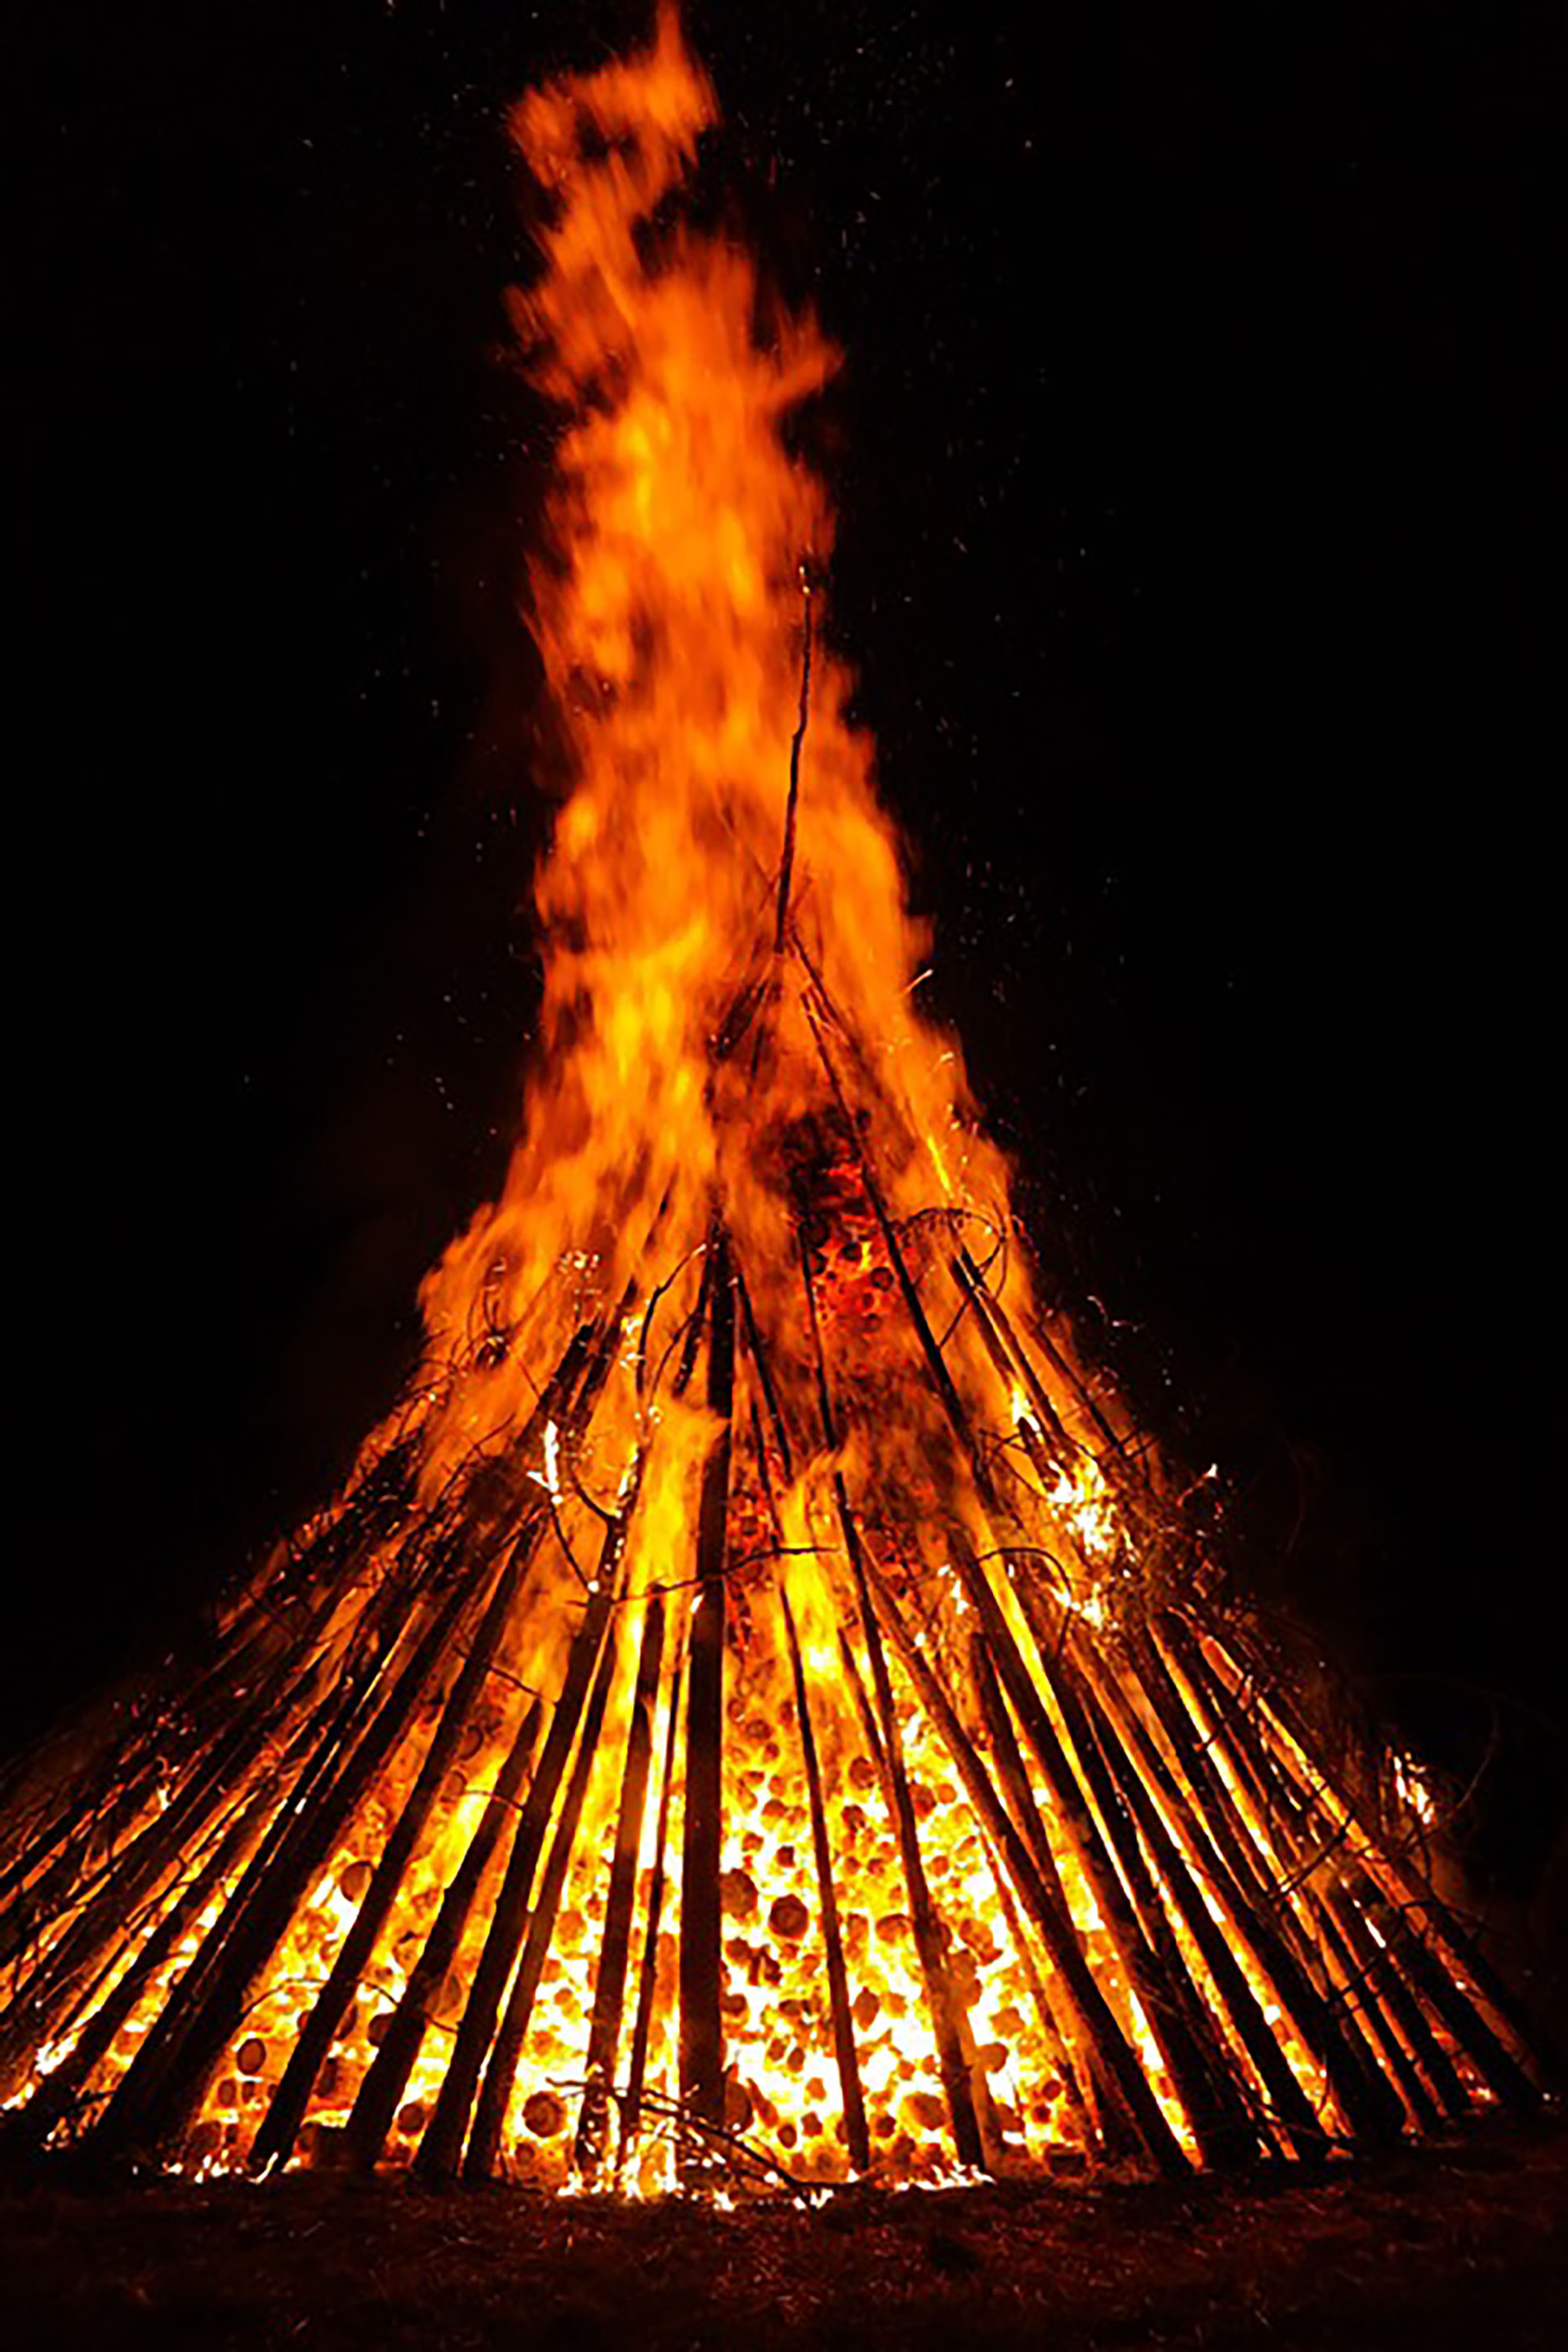 En India la tradición para recibir el nuevo año es crear una fogata para quemar y olvidar los malos momentos